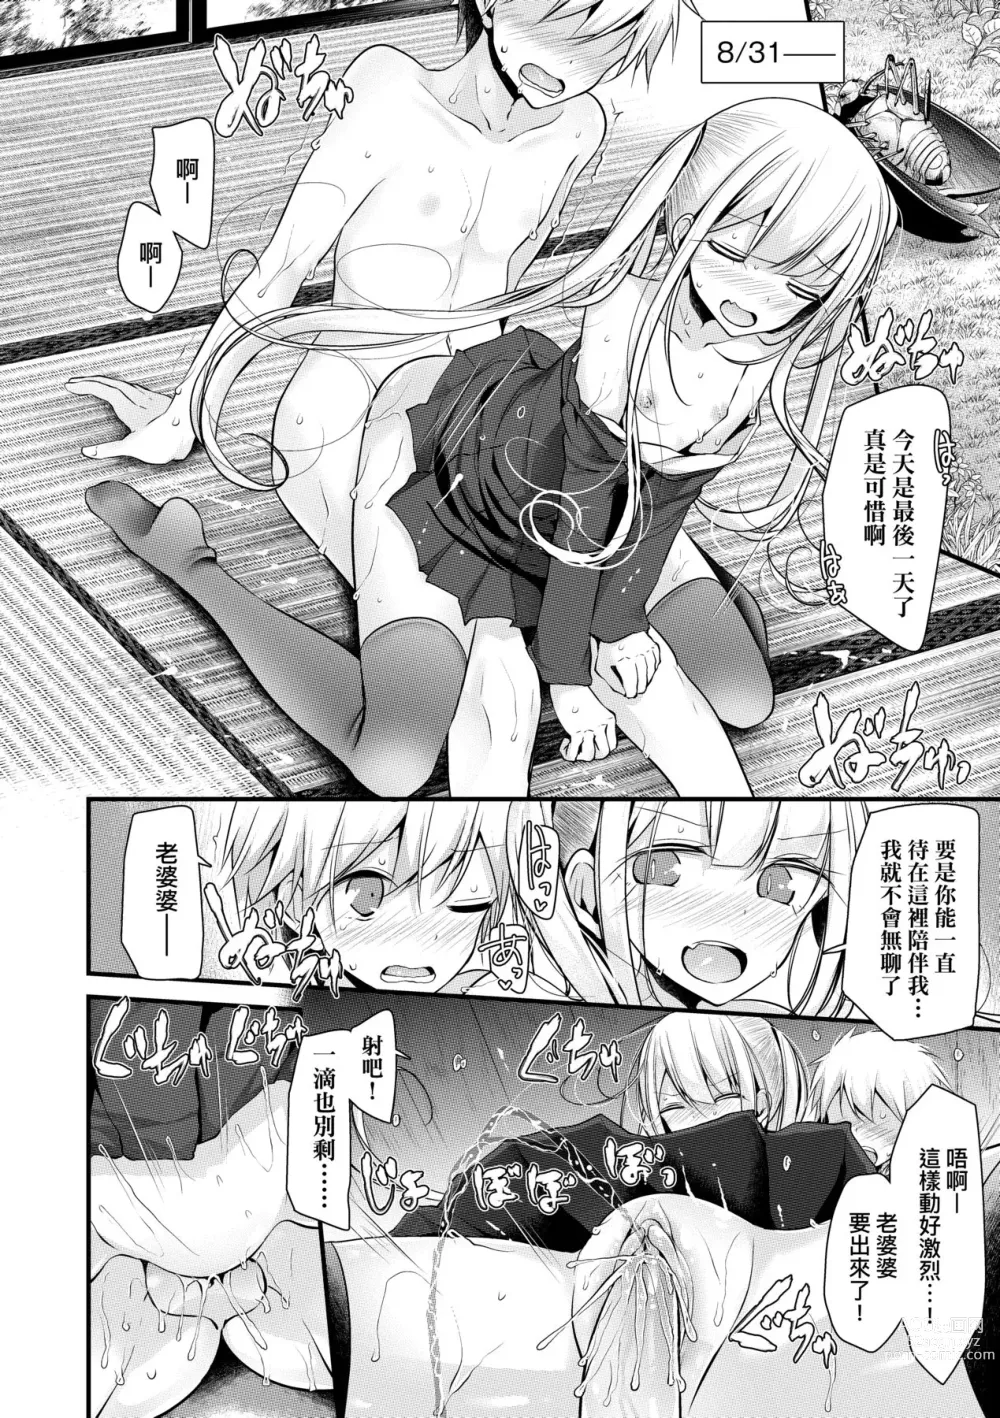 Page 157 of manga 年上的少女你也很喜歡吧? (decensored)